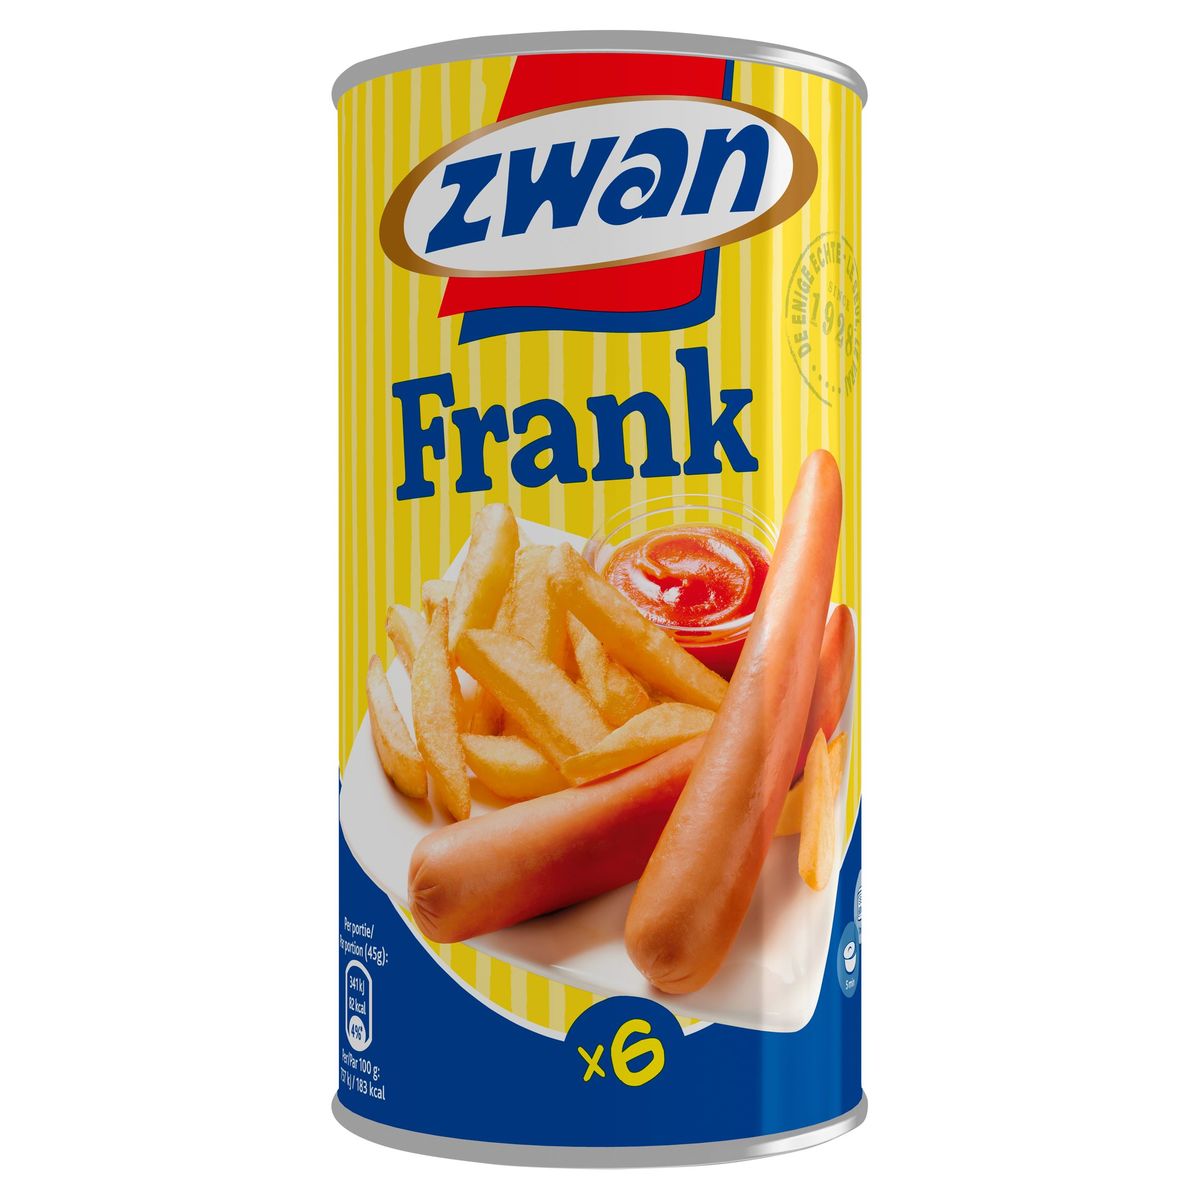 Zwan Saucisse Frank Snack 550g